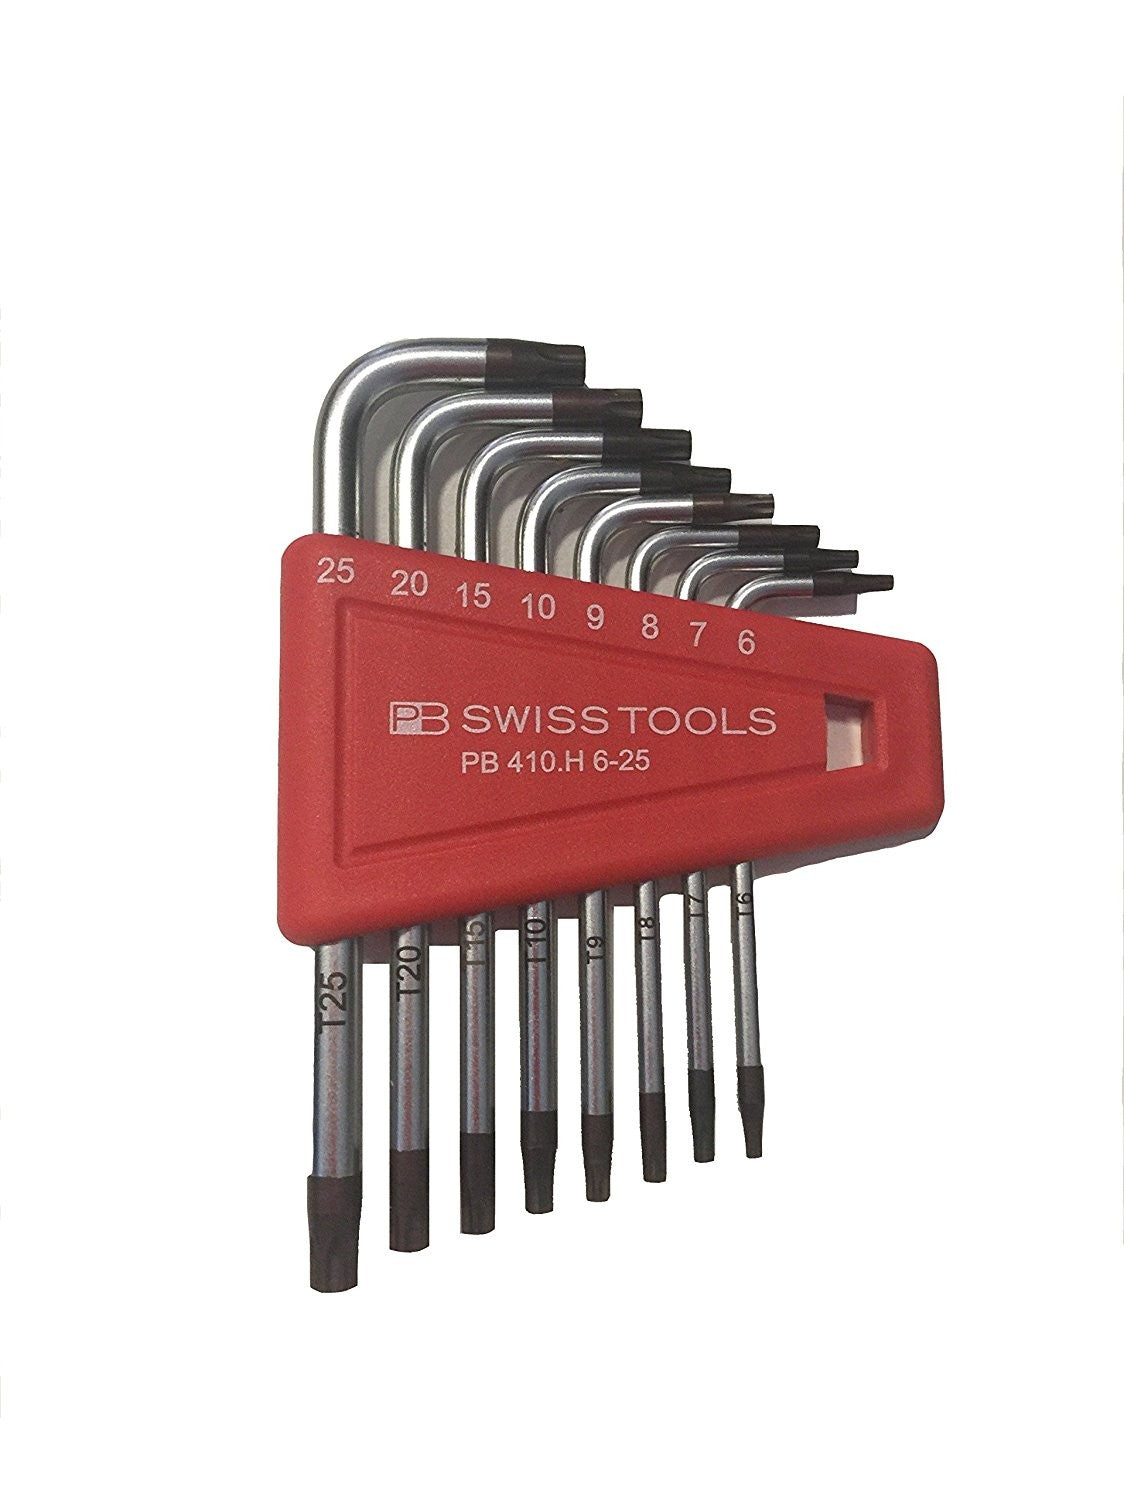 Swisstools Torx key set